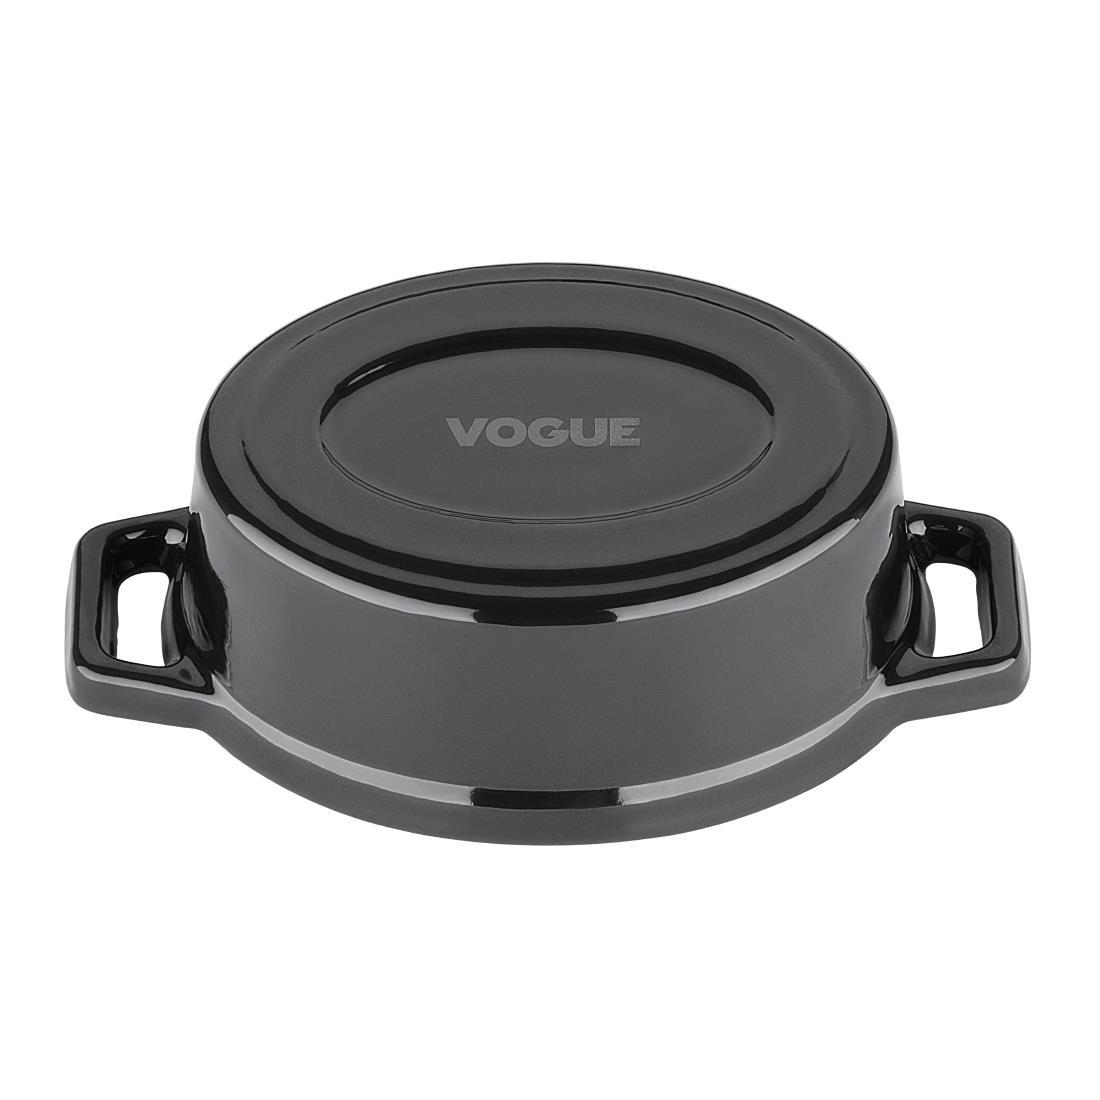 Vogue Cast Iron Oval Mini Pot Black - Y264  - 5